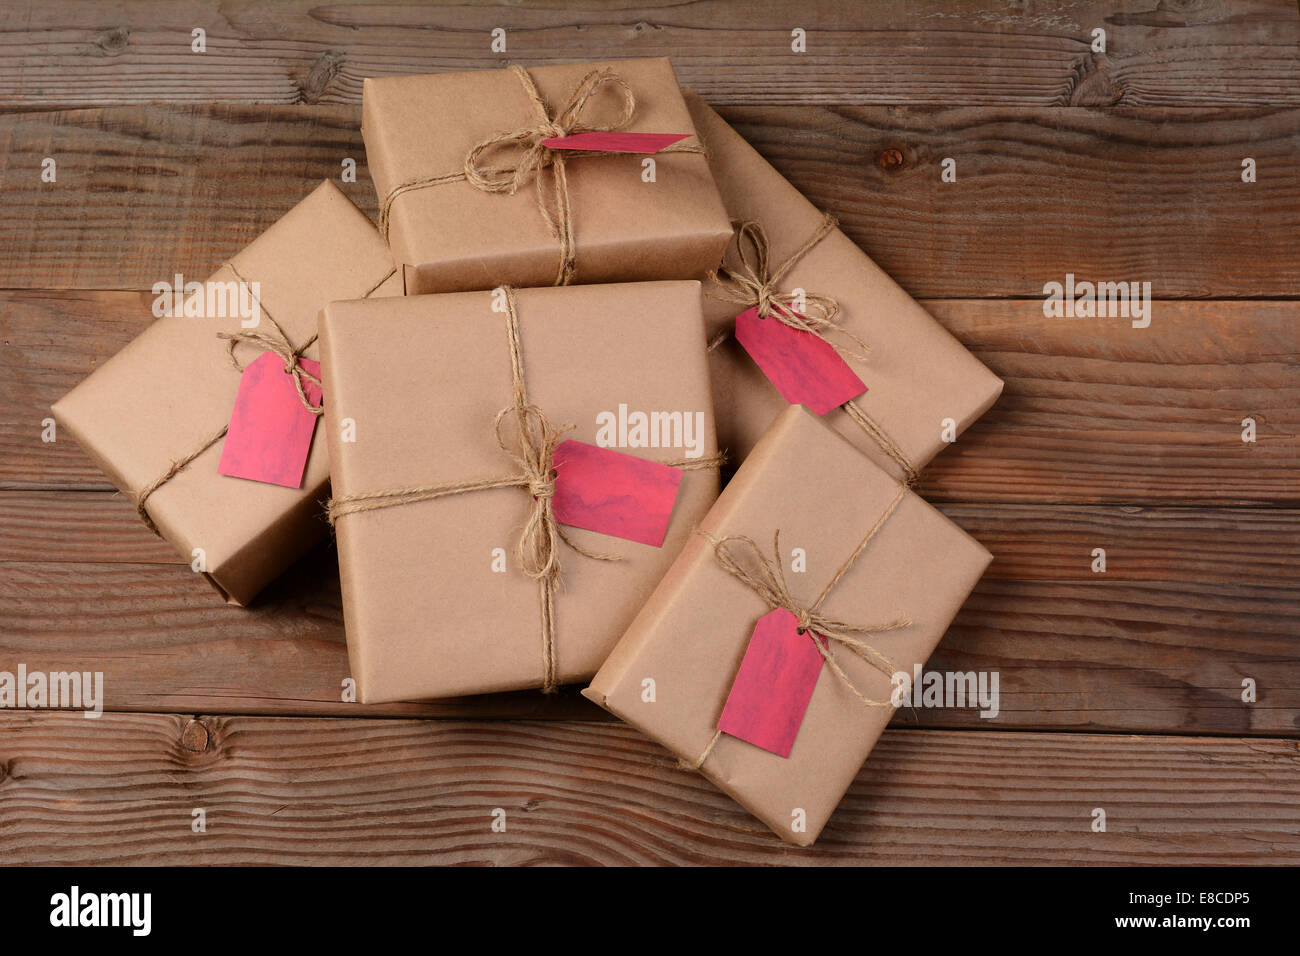 Une pile d'eco friendly wrapped Christmas présente, sur un fond de bois rustique. Banque D'Images